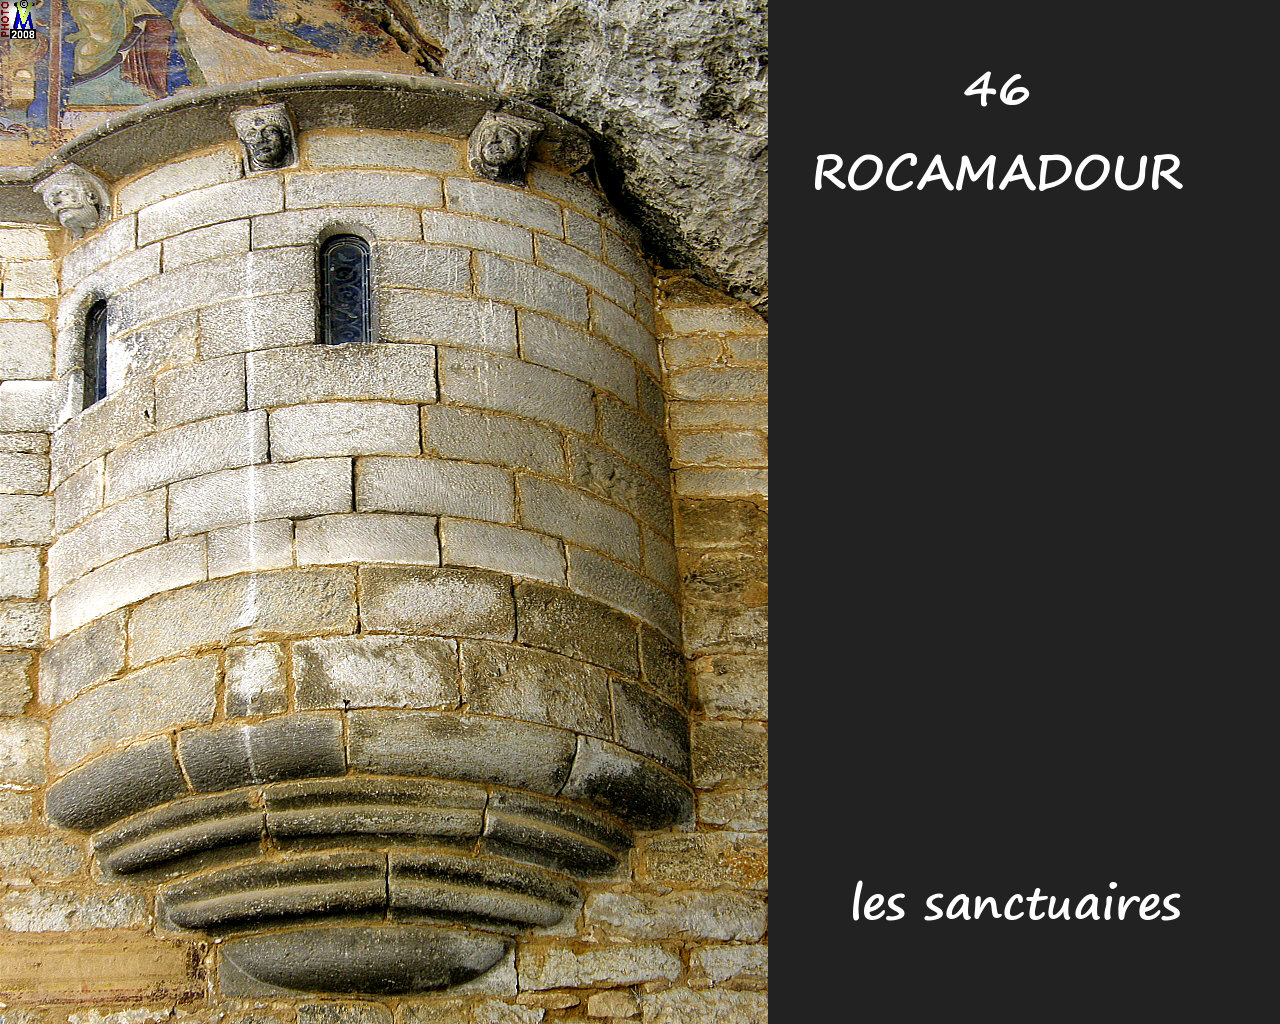 46ROCAMADOUR_sanctuaires_244.jpg